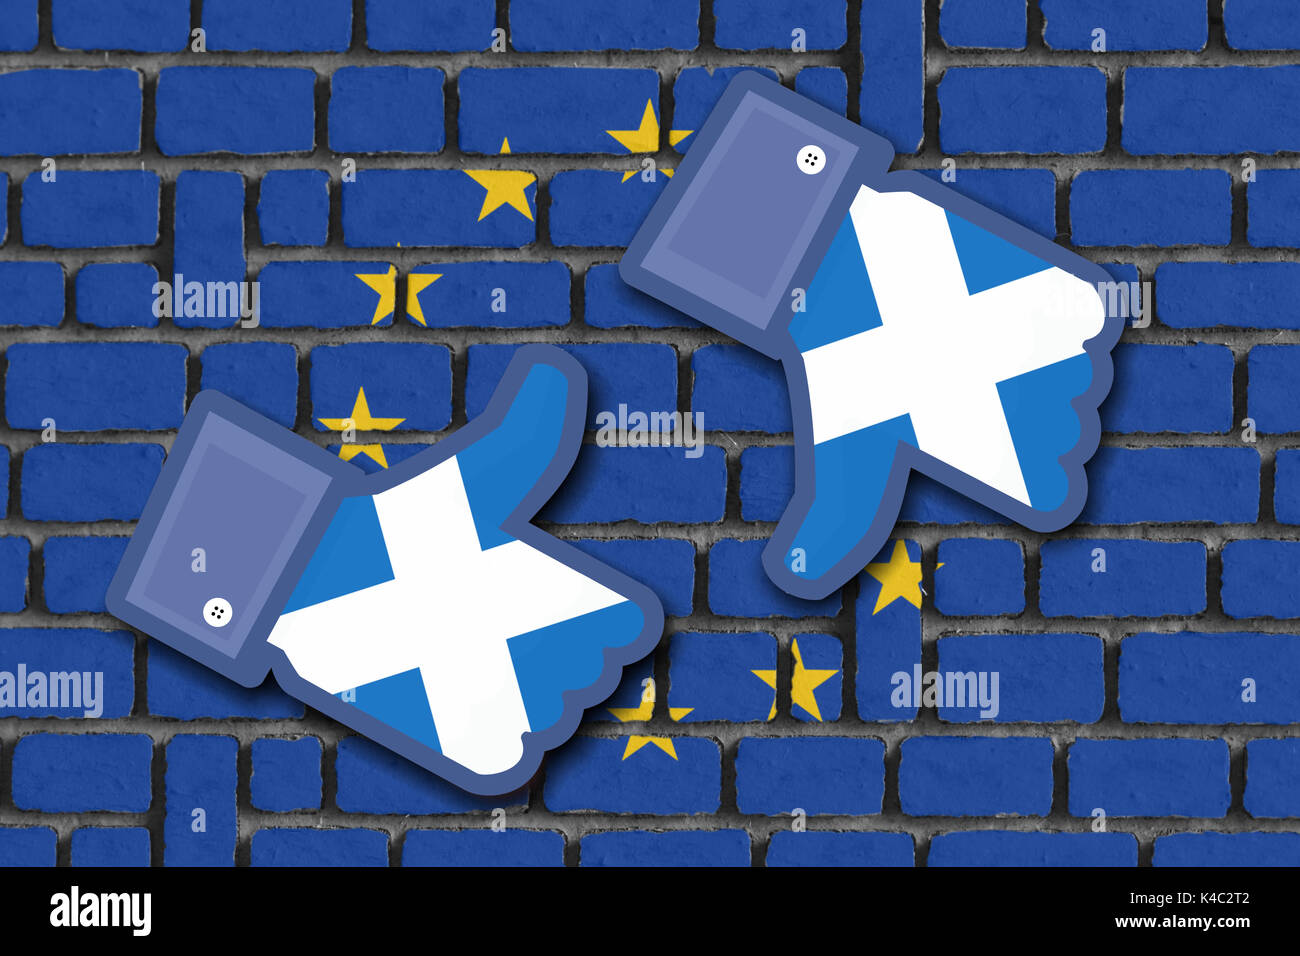 Muro con bandiera dell'Unione europea e Facebook icone simili e non come con bandiera di Scozia Foto Stock